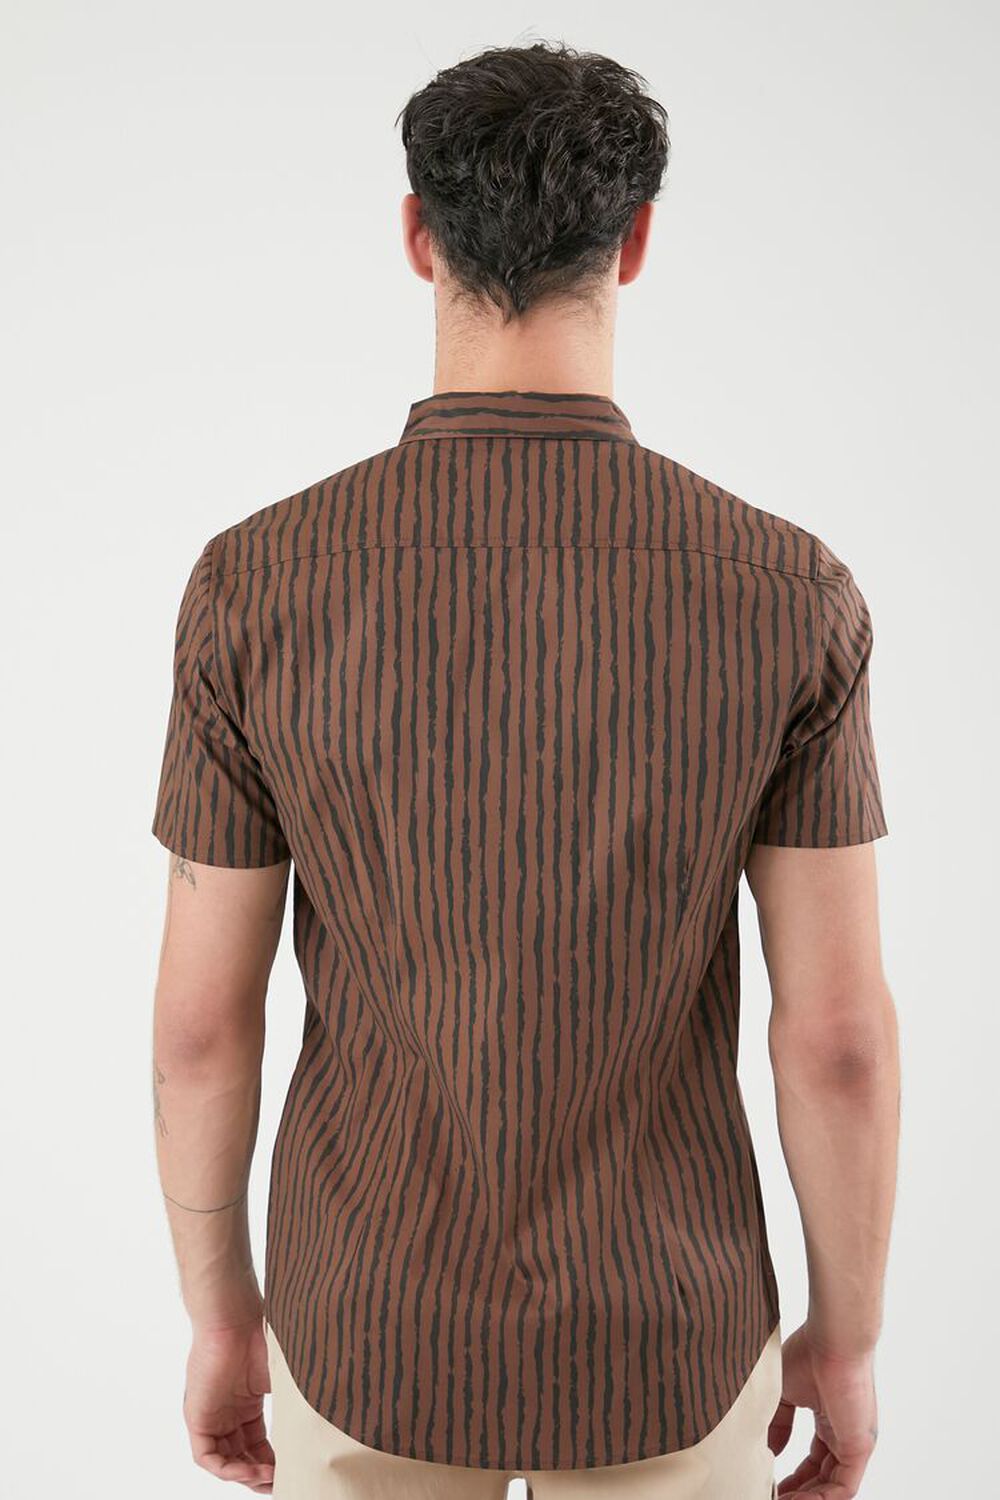 LATTE/BLACK Striped Curved-Hem Shirt, image 3